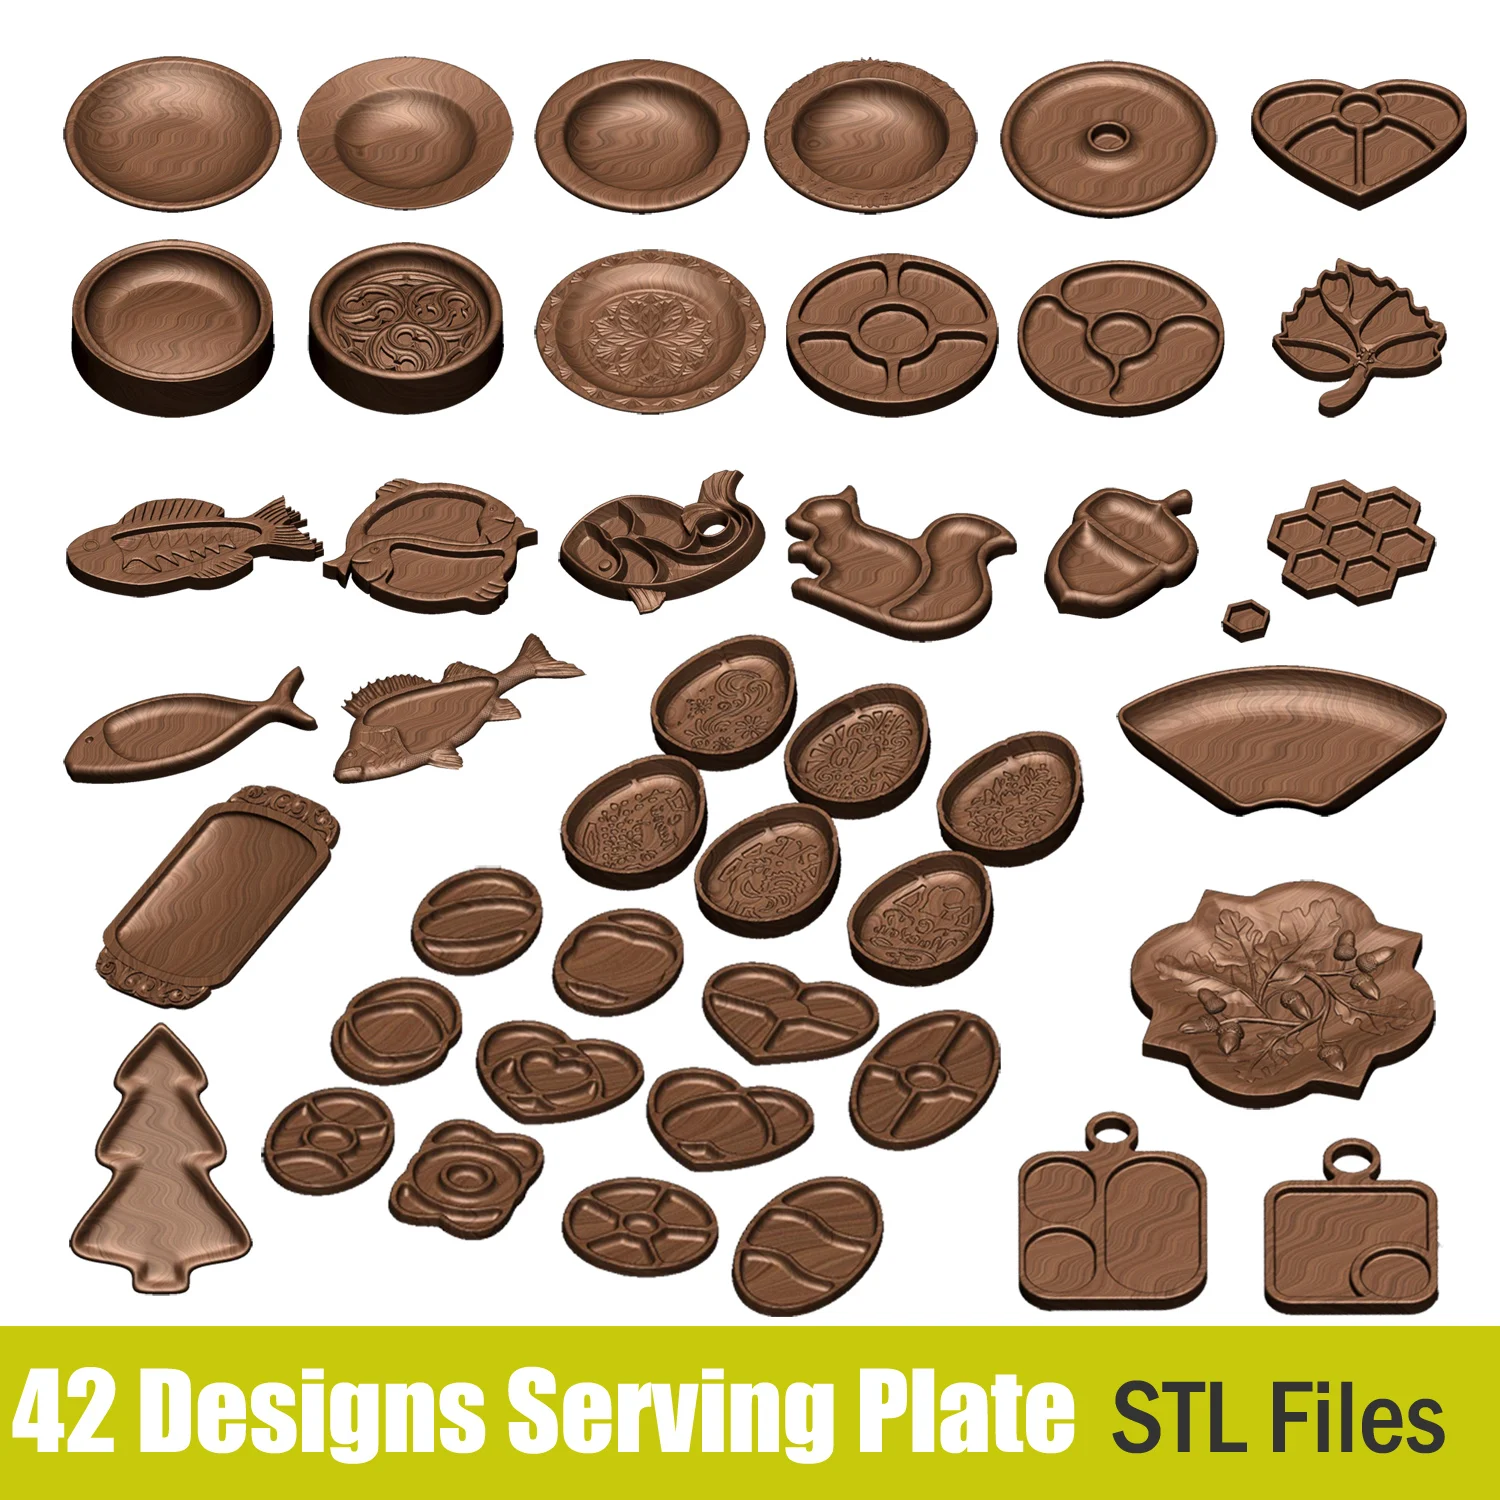 42PCS 3D Model STL File Bundle Tray Serving Plate CNC Plans for CNC Router Engraving Support ZBrush Artcam Aspire Cut3d cnc router machine